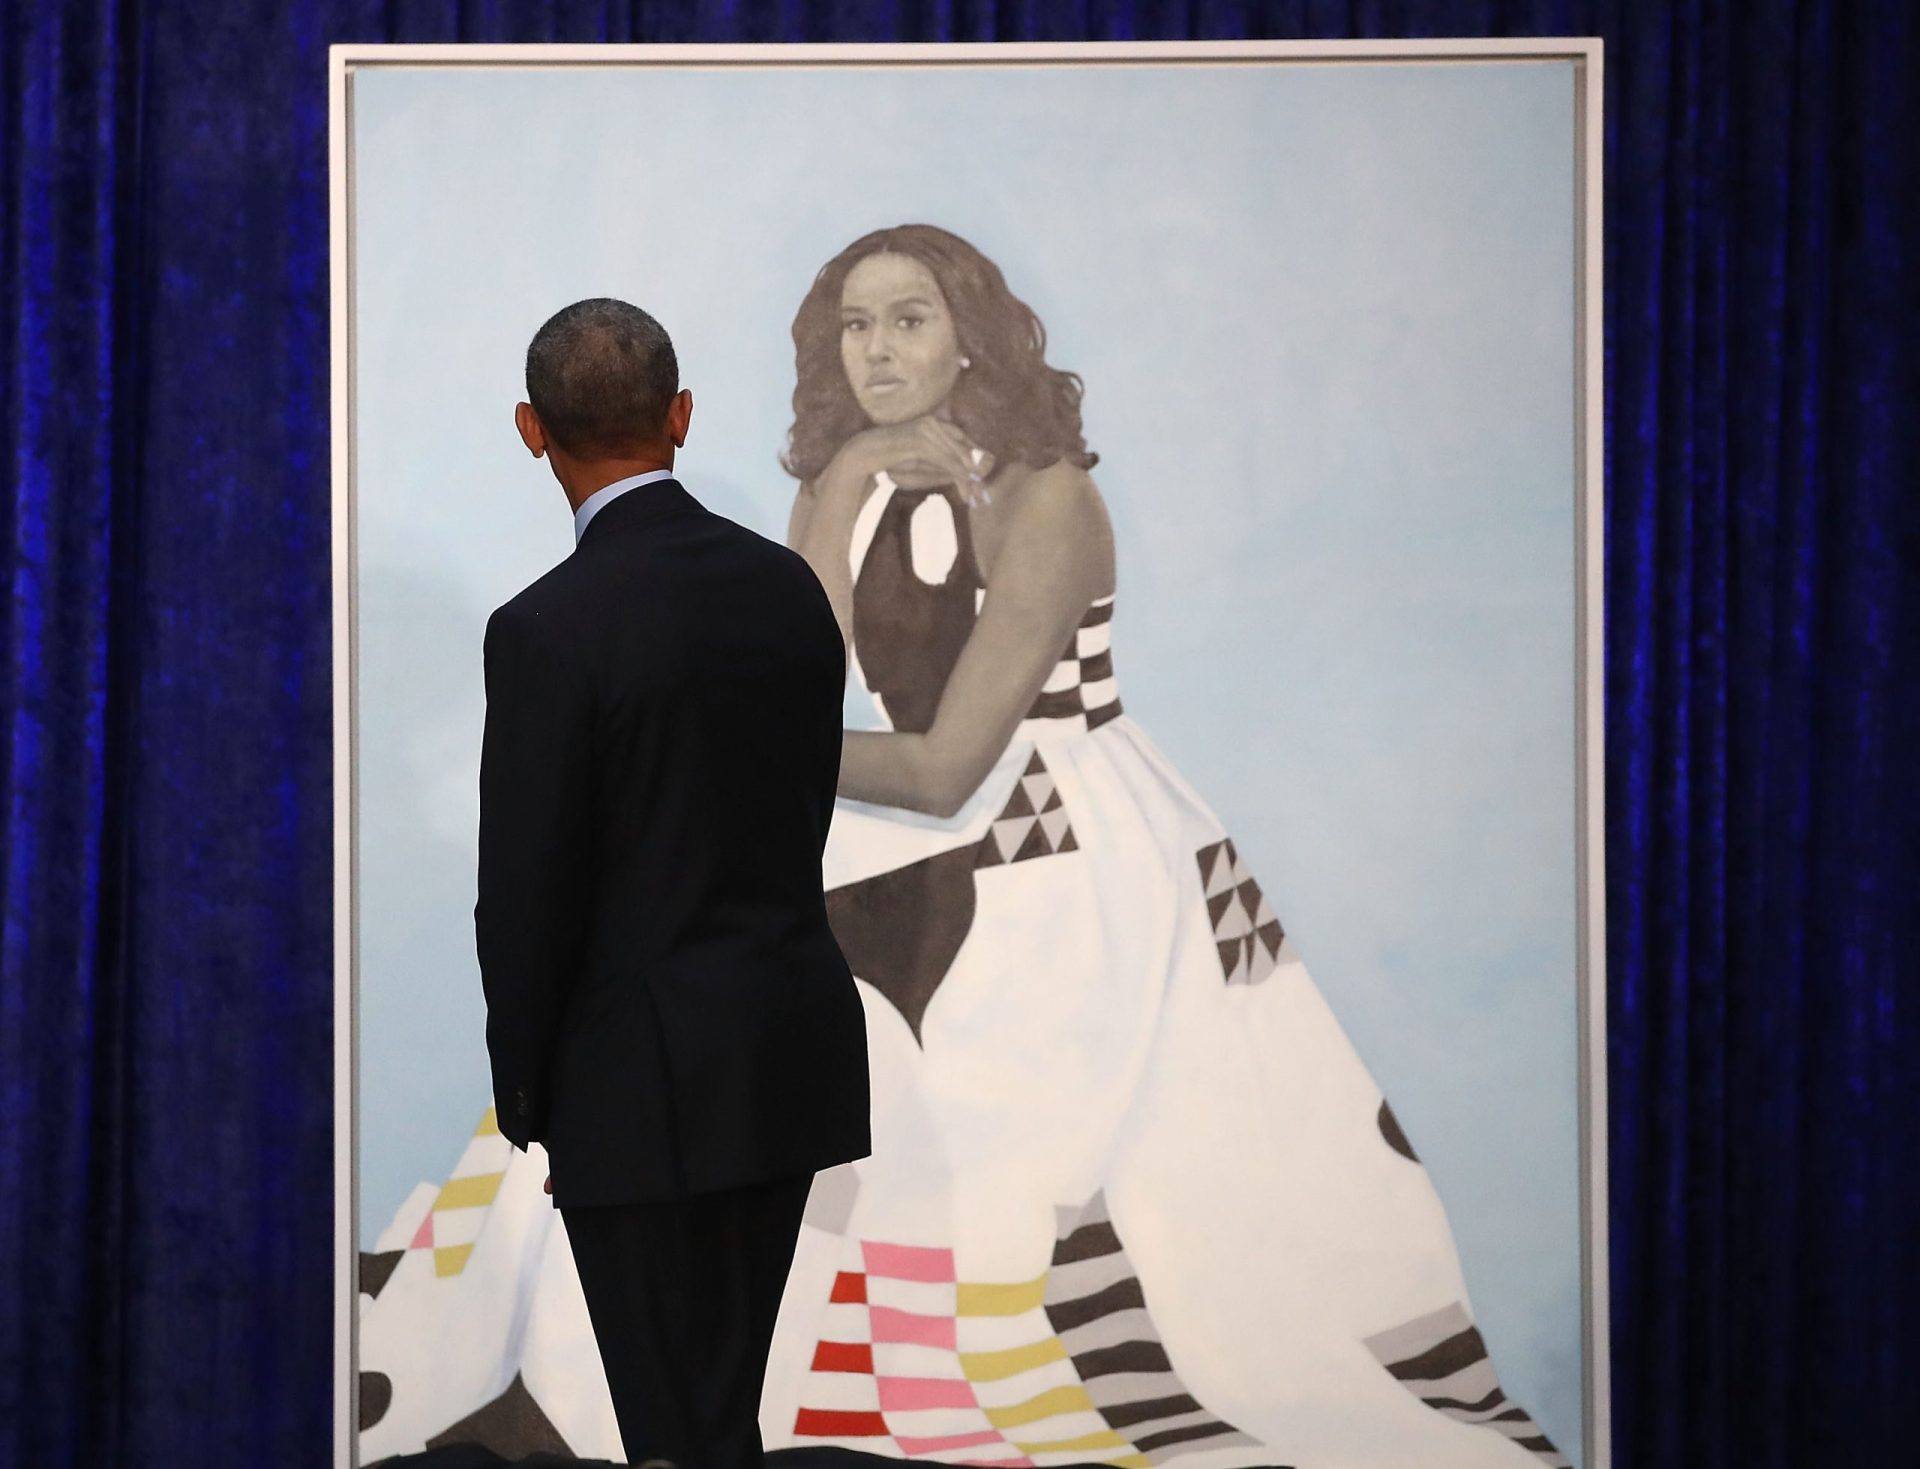 Obama elogia “charme e sensualidade” de Michelle